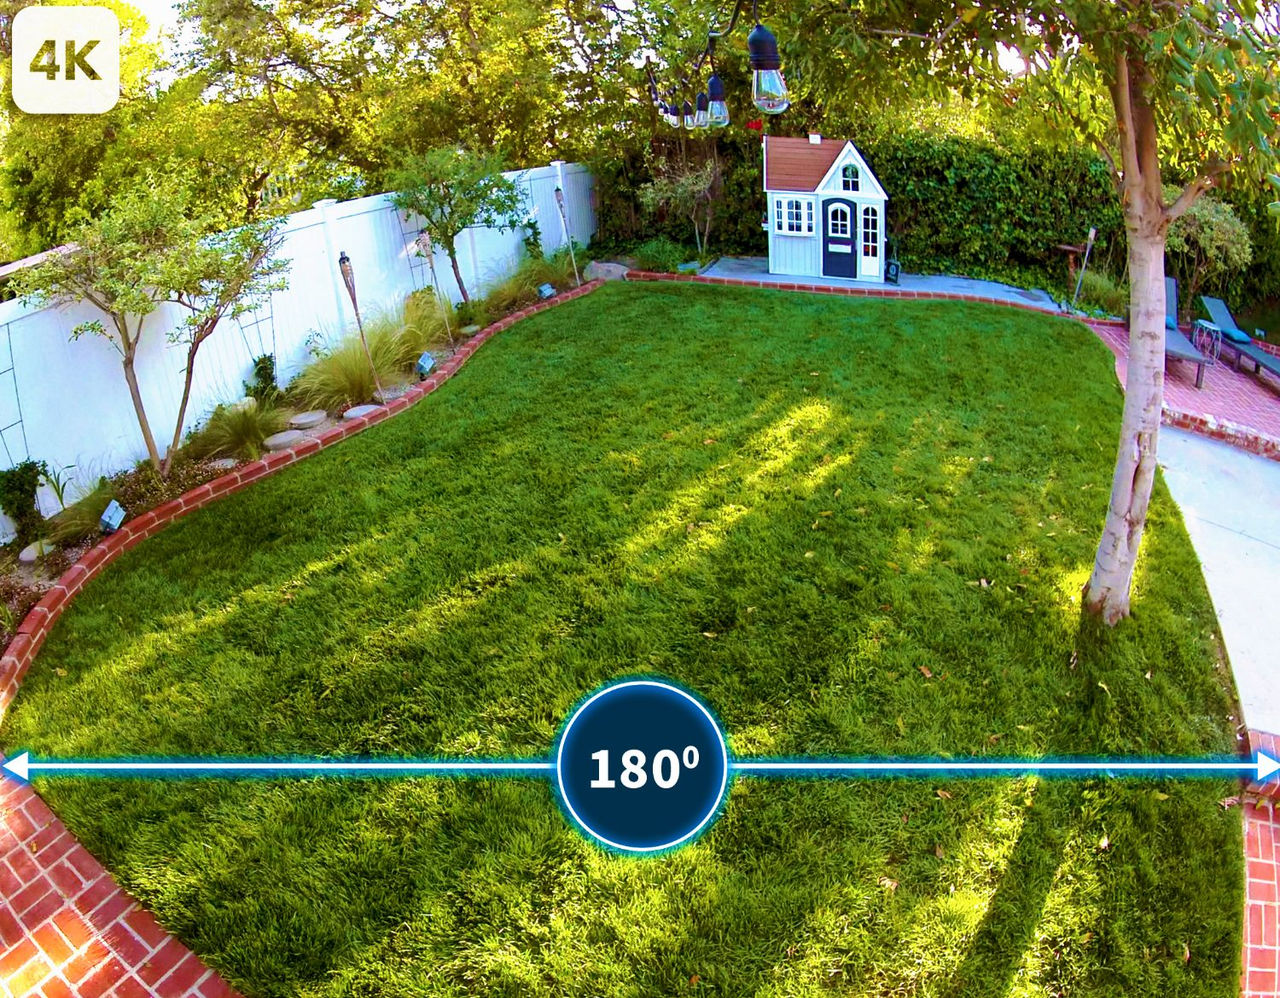 La vision d'un jardin avec une vue à 180° provenant de la caméra de sécurité